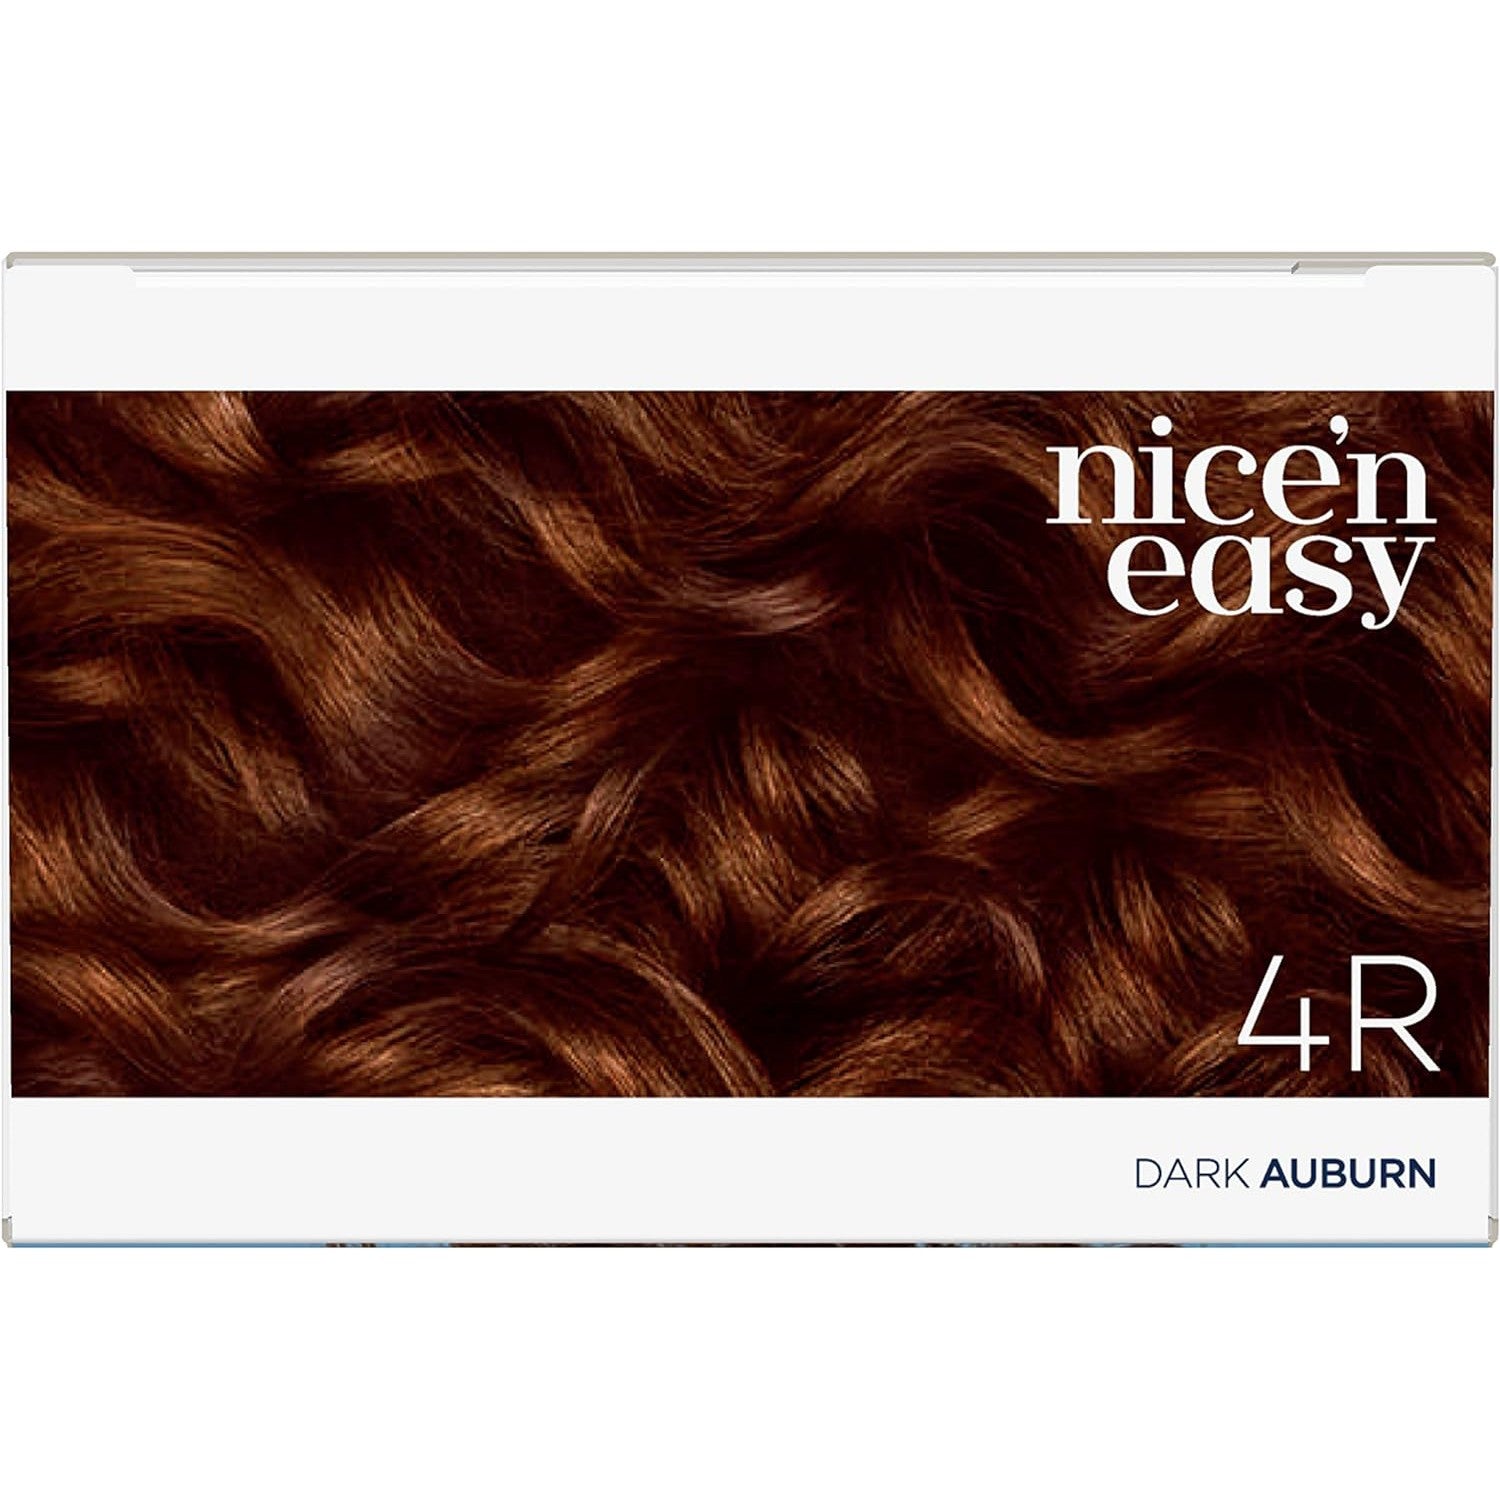 Clairol Nice N Easy Crème Natural Permanent Hair Dye - 4R Natural Dark Auburn